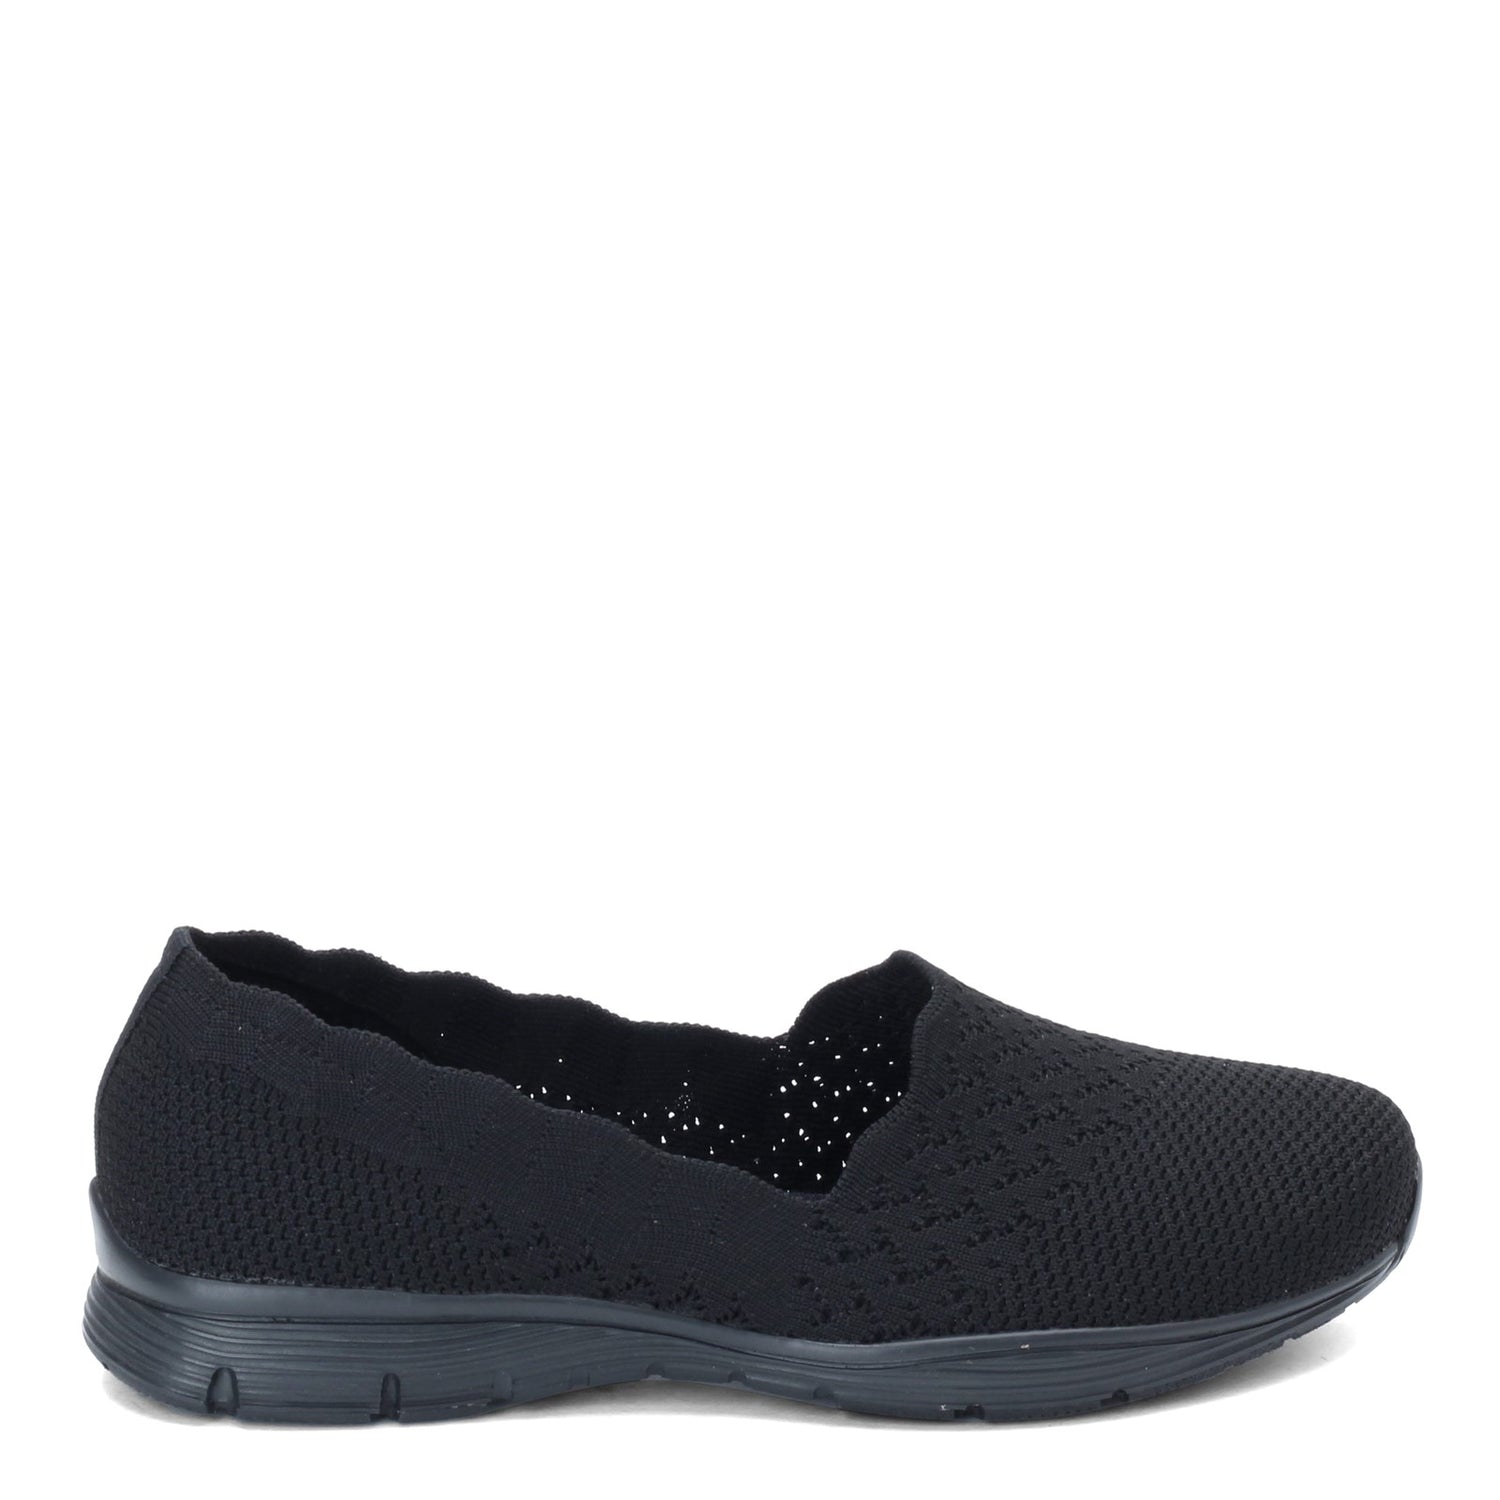 Peltz Shoes  Women's Skechers Seager - Stat Flat - Wide Width Black/Black 49481W-BBK